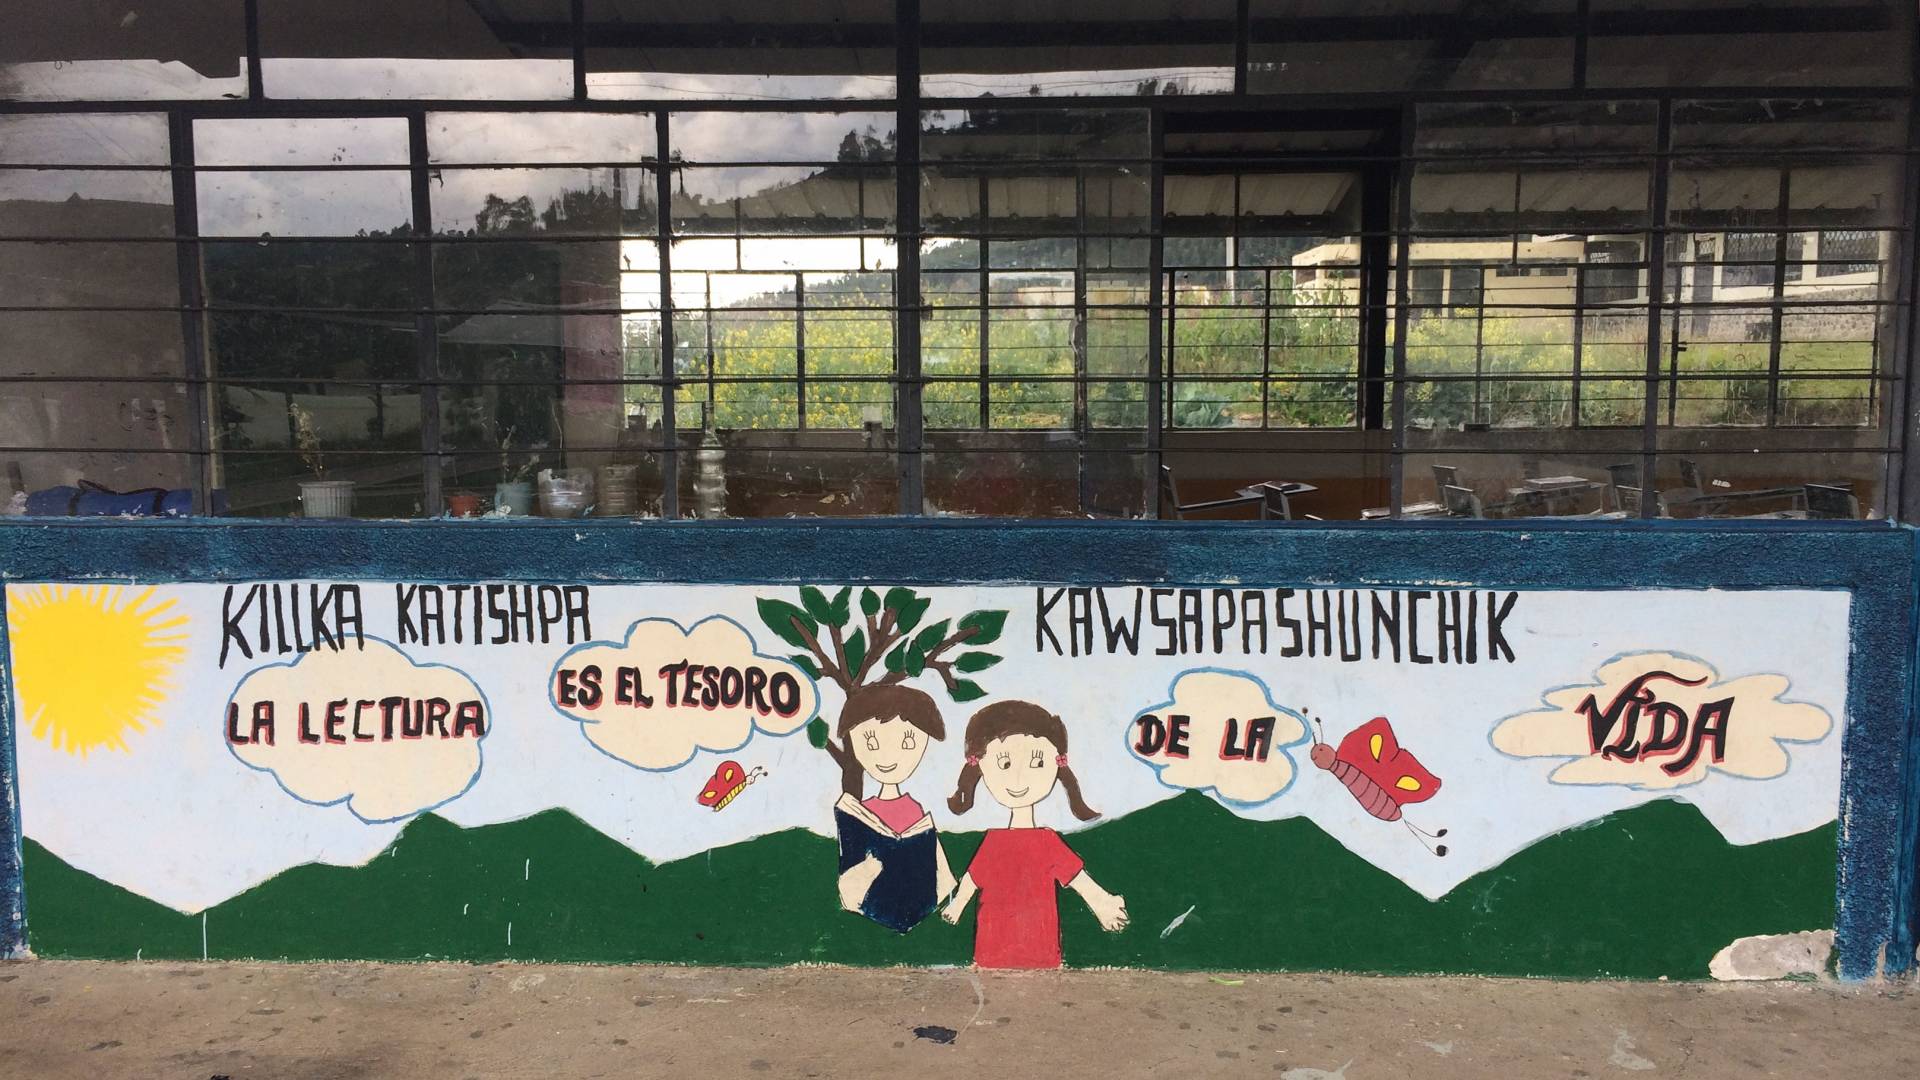 Painted mural on wall in Ecuador that says “La lectura es el tesoro de la vida”